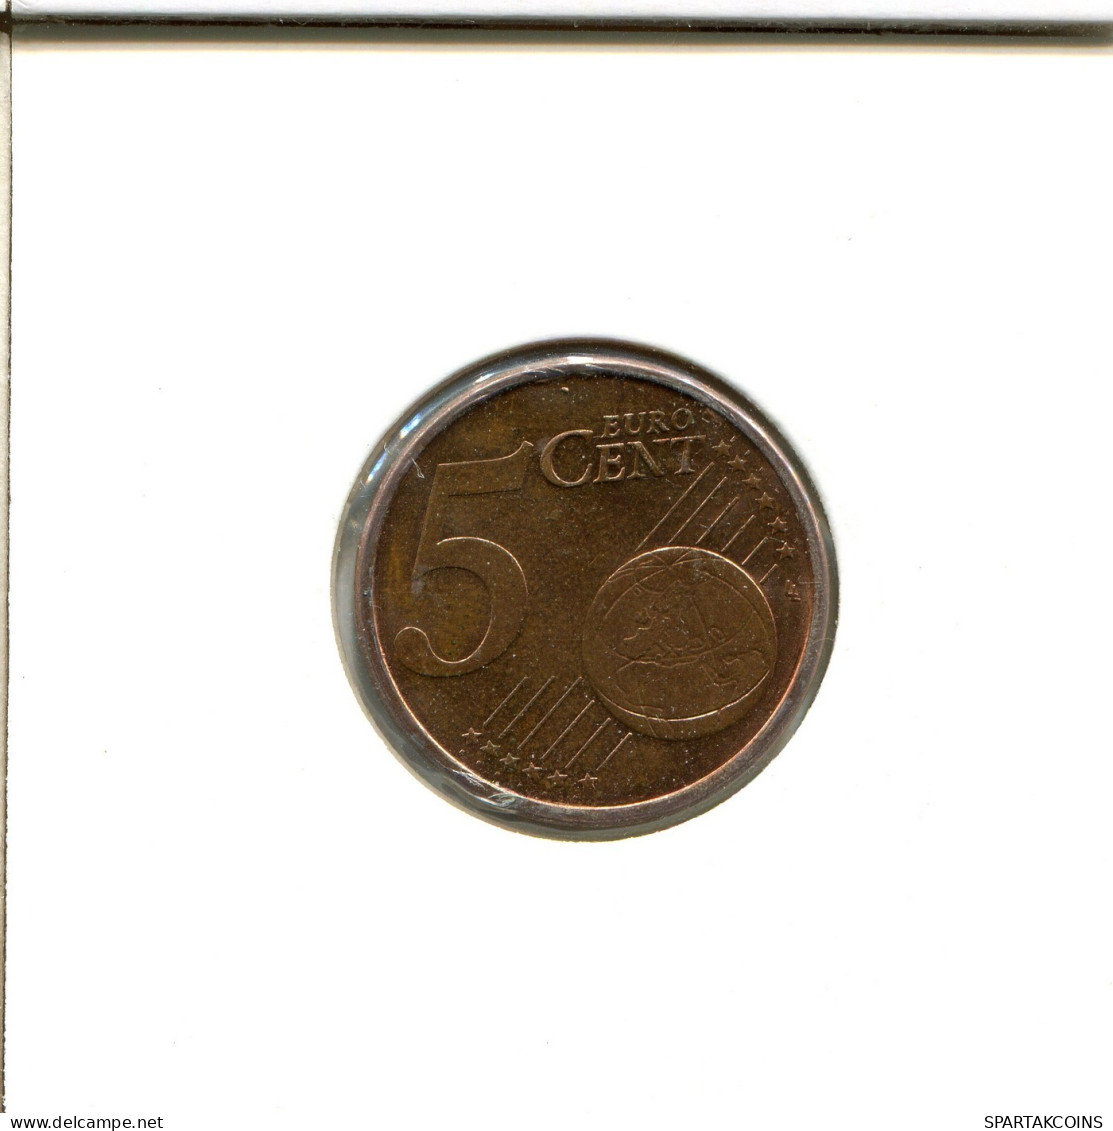 5 EURO CENTS 2008 SPAIN Coin #EU571.U.A - Spain